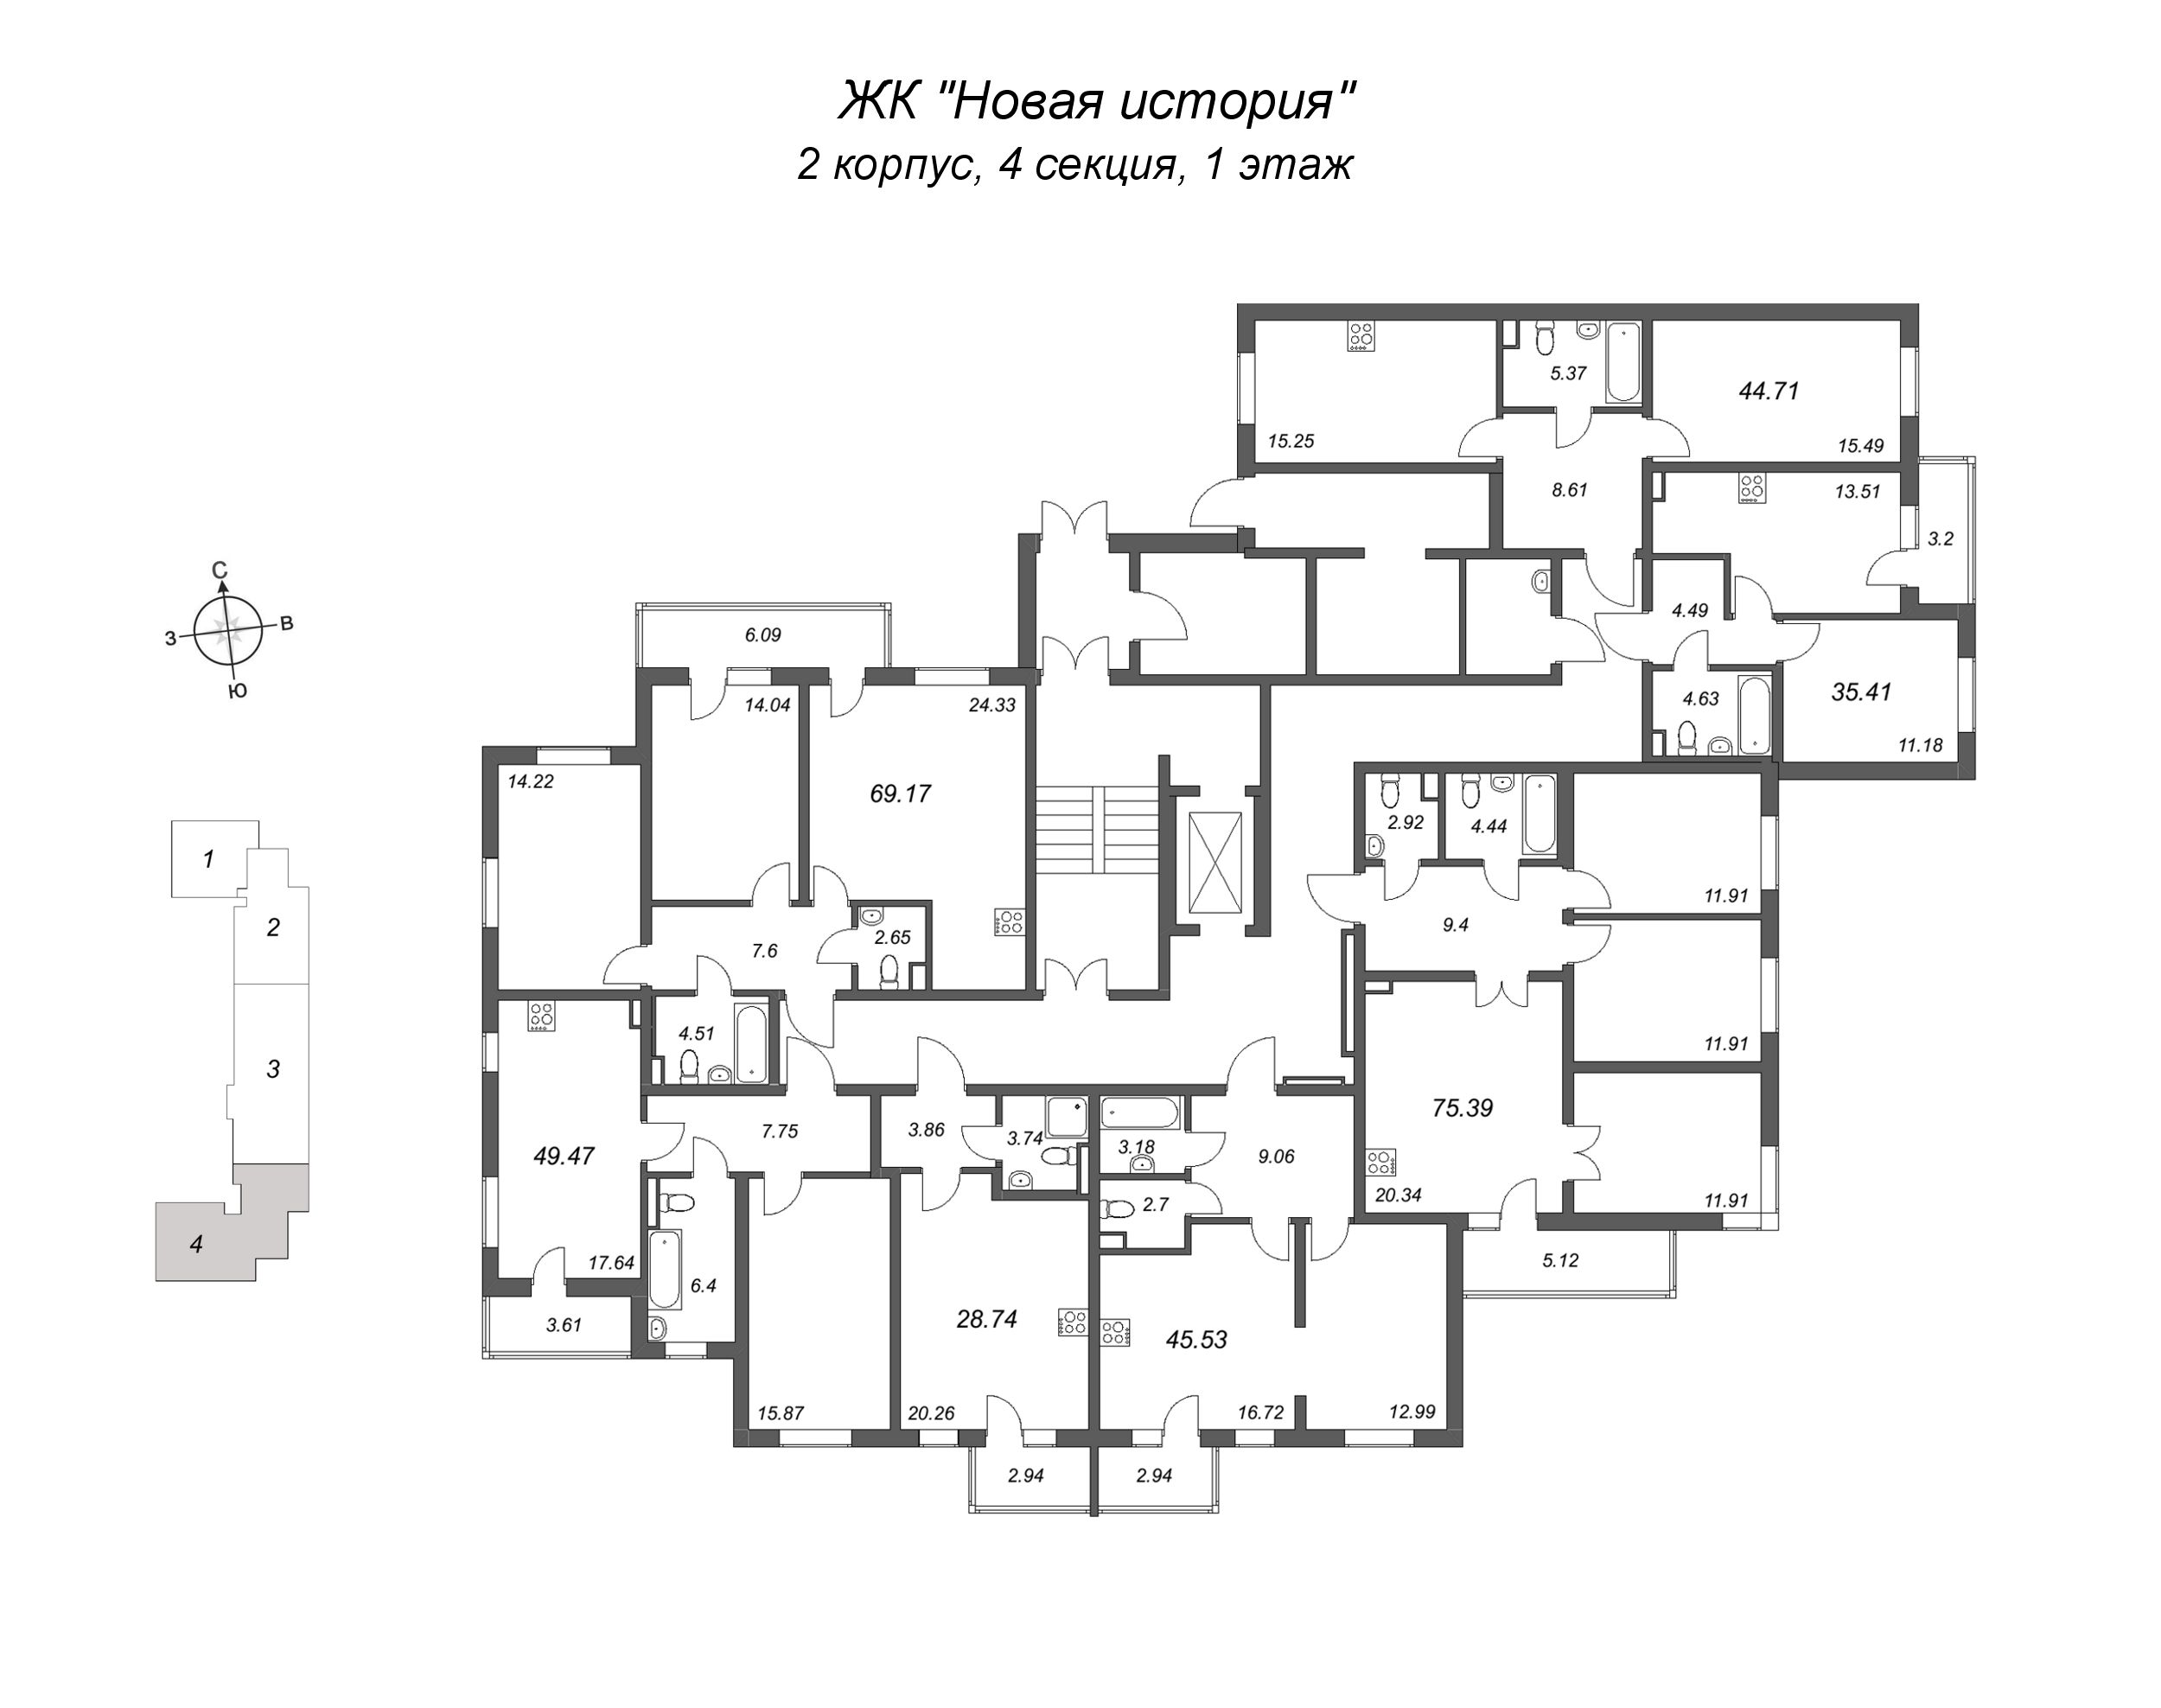 3-комнатная (Евро) квартира, 69.17 м² в ЖК "Новая история" - планировка этажа